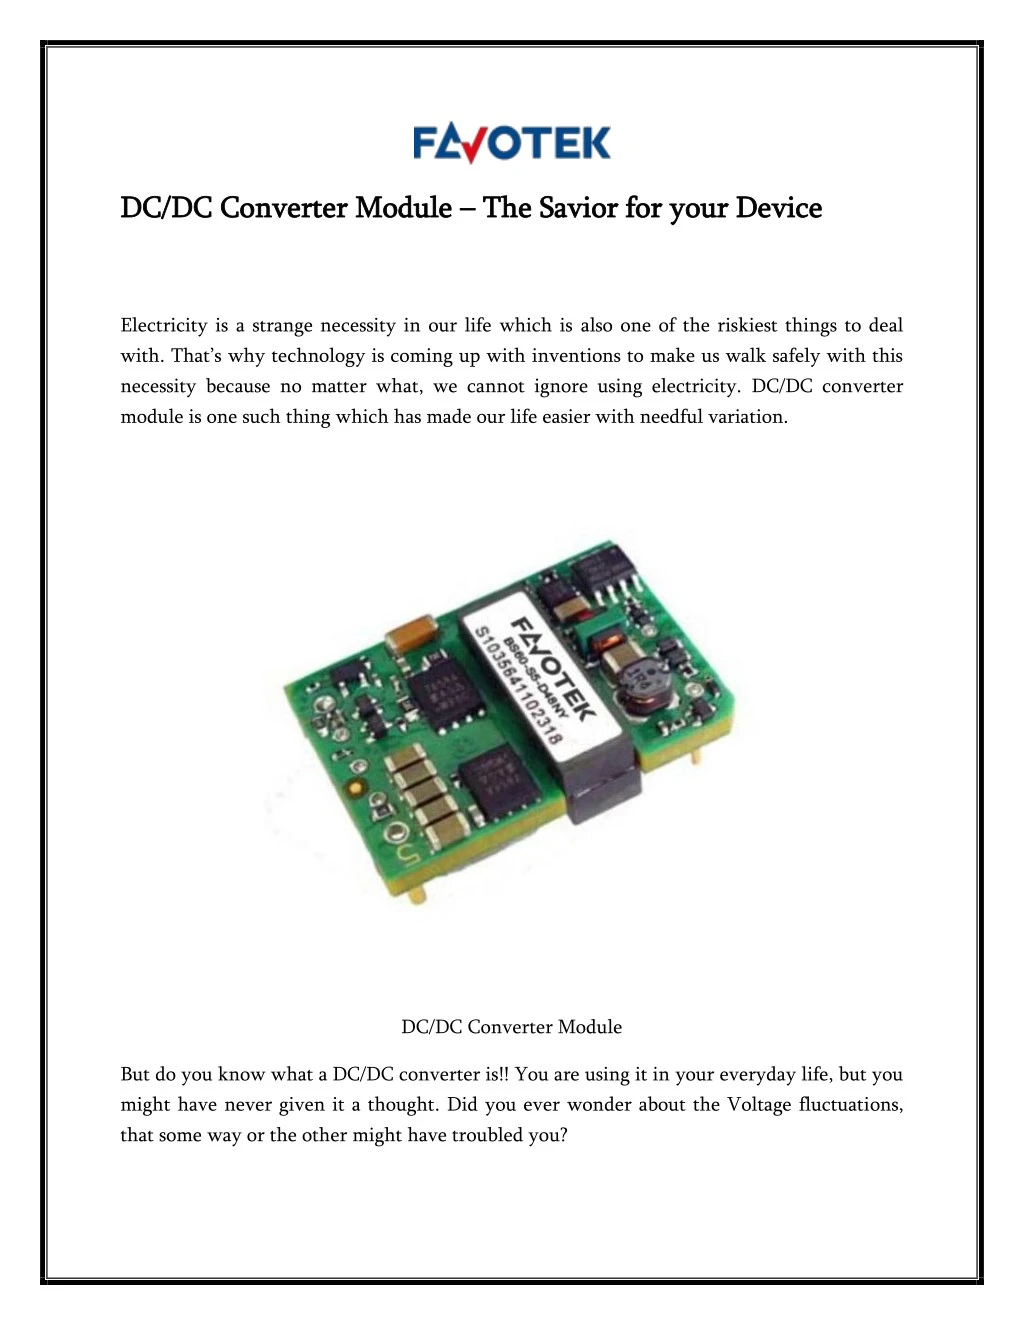 dc dc converter module dc dc converter module